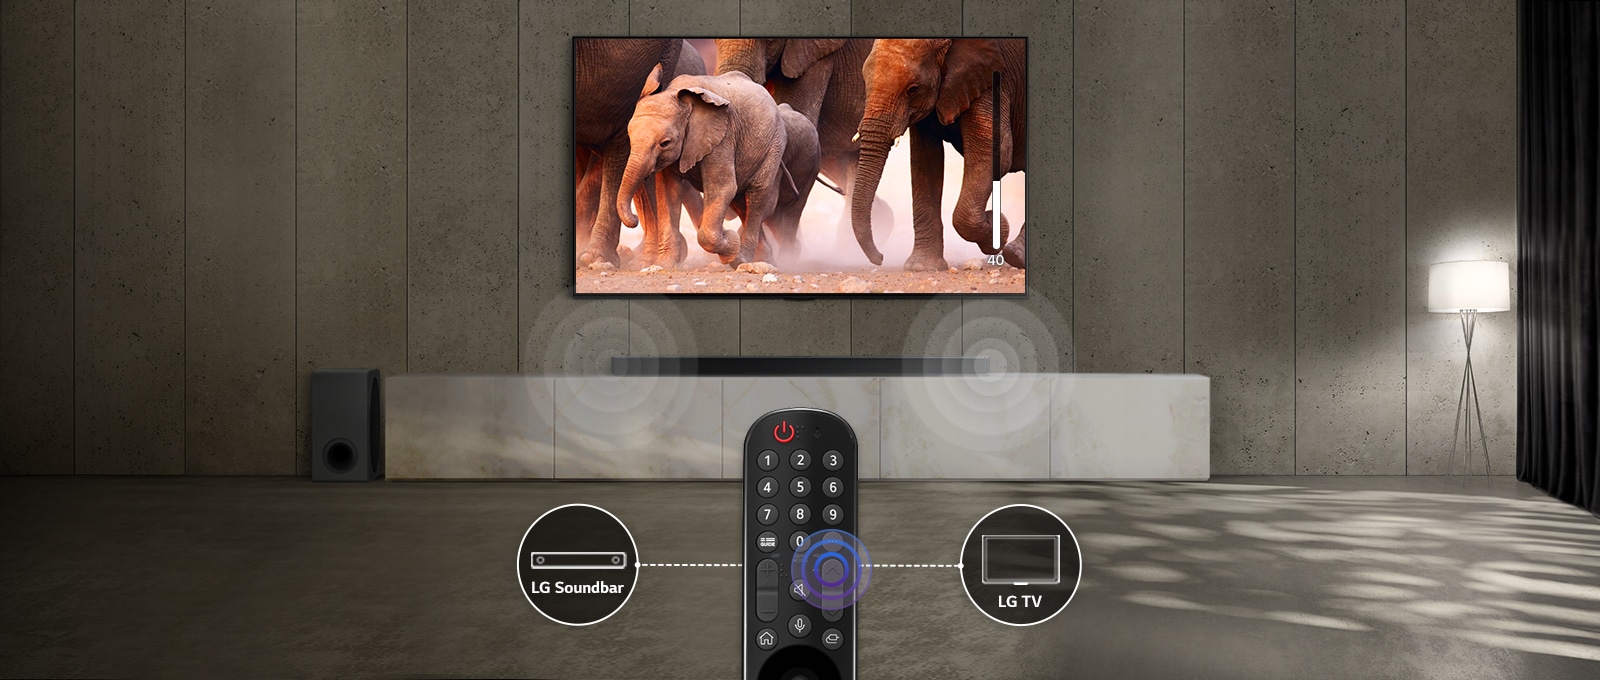 Телевизор в стая с приглушени светлини, който показва изображение на преминаващи слонове. Вижда се звуков ефект на саундбара под телевизора. В долната част на изображението е показано дистанционното управление на телевизора, а саундбарът и иконата на телевизора са свързани с лявата и дясната част на дистанционното управление.